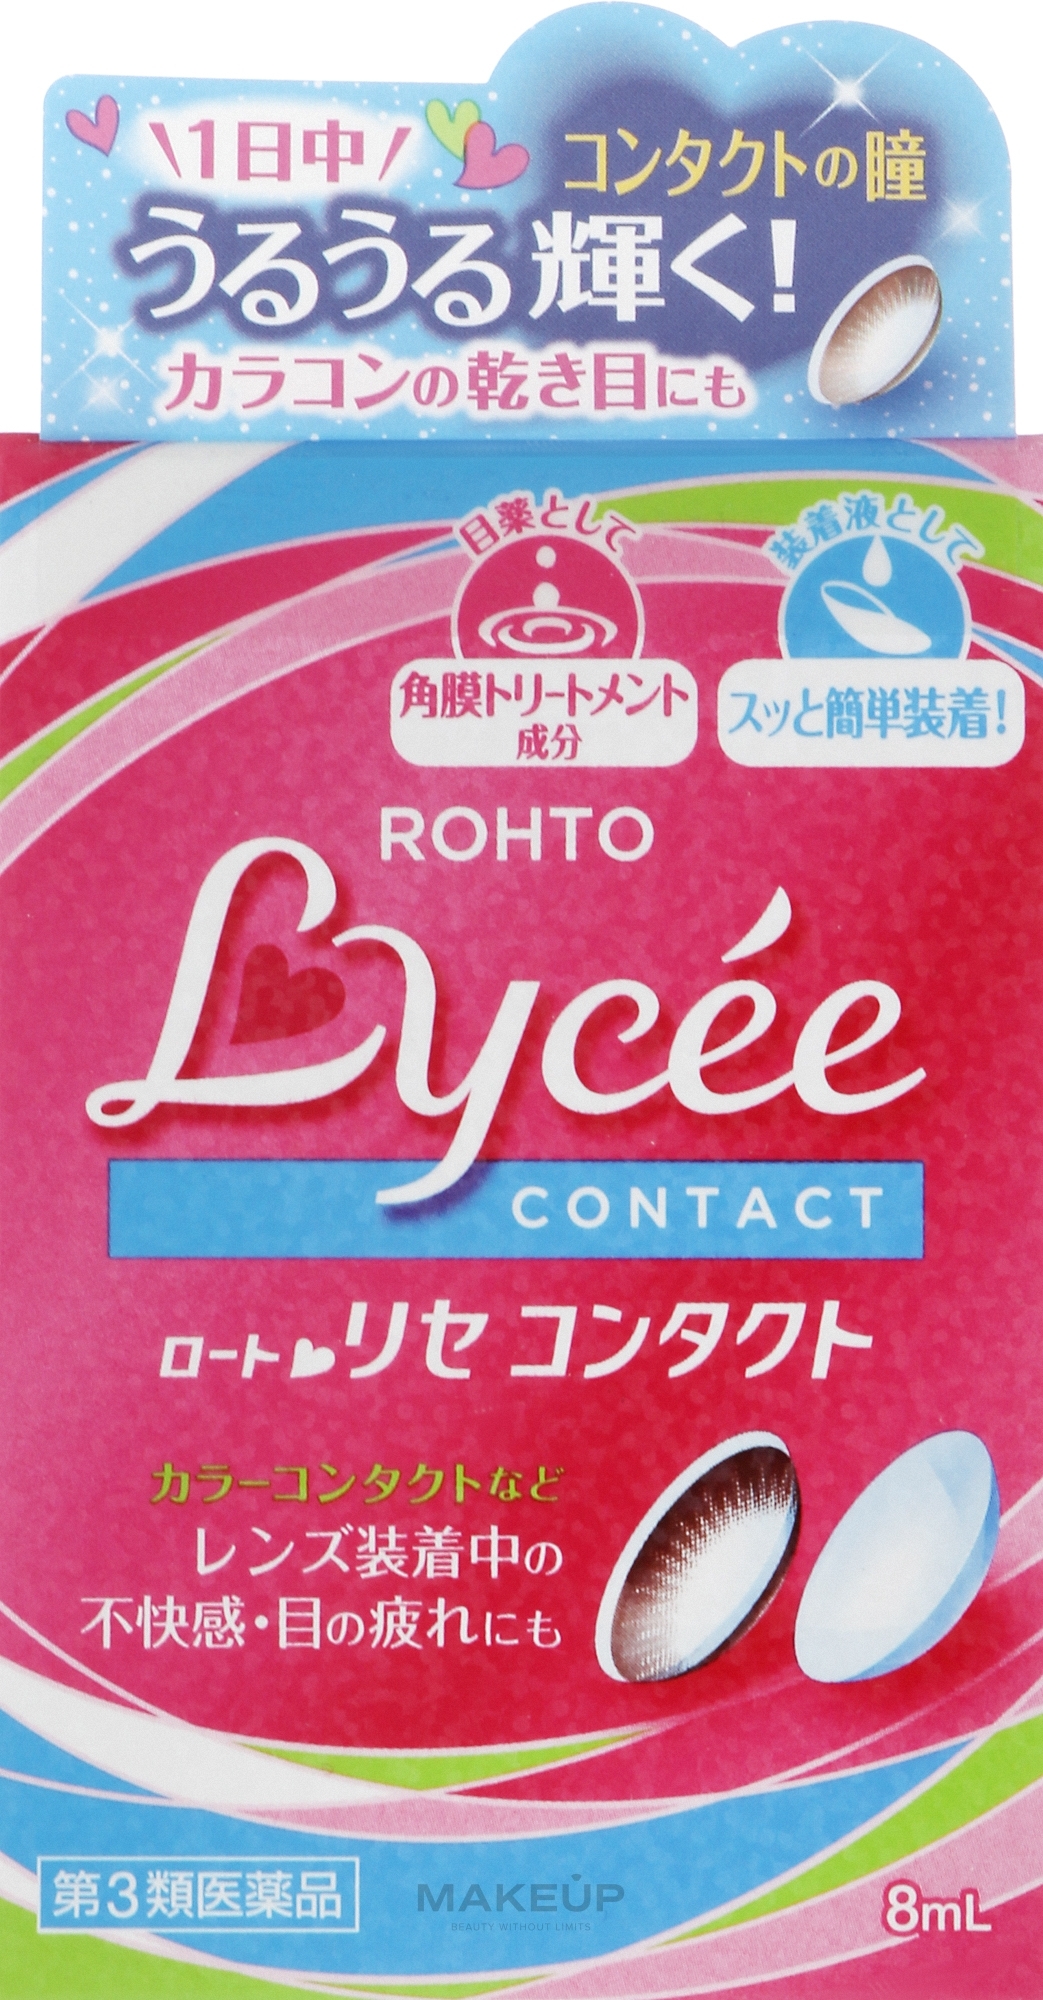 Глазные капли при ношении линз - Rohto Lycee — фото 8ml